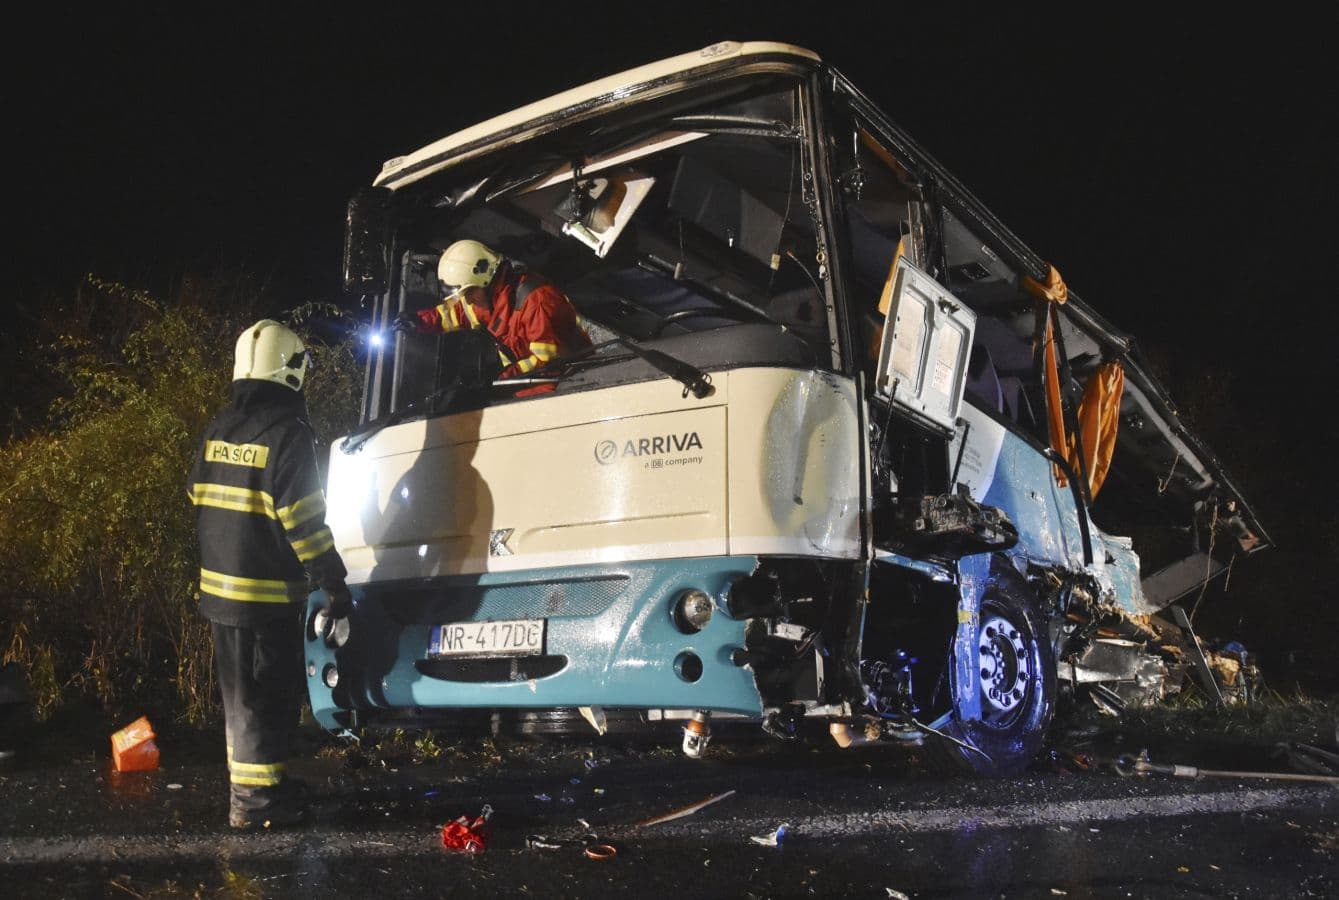 Rettenetesen érzi magát a Nyitra melletti tragédiát követően a két sofőr